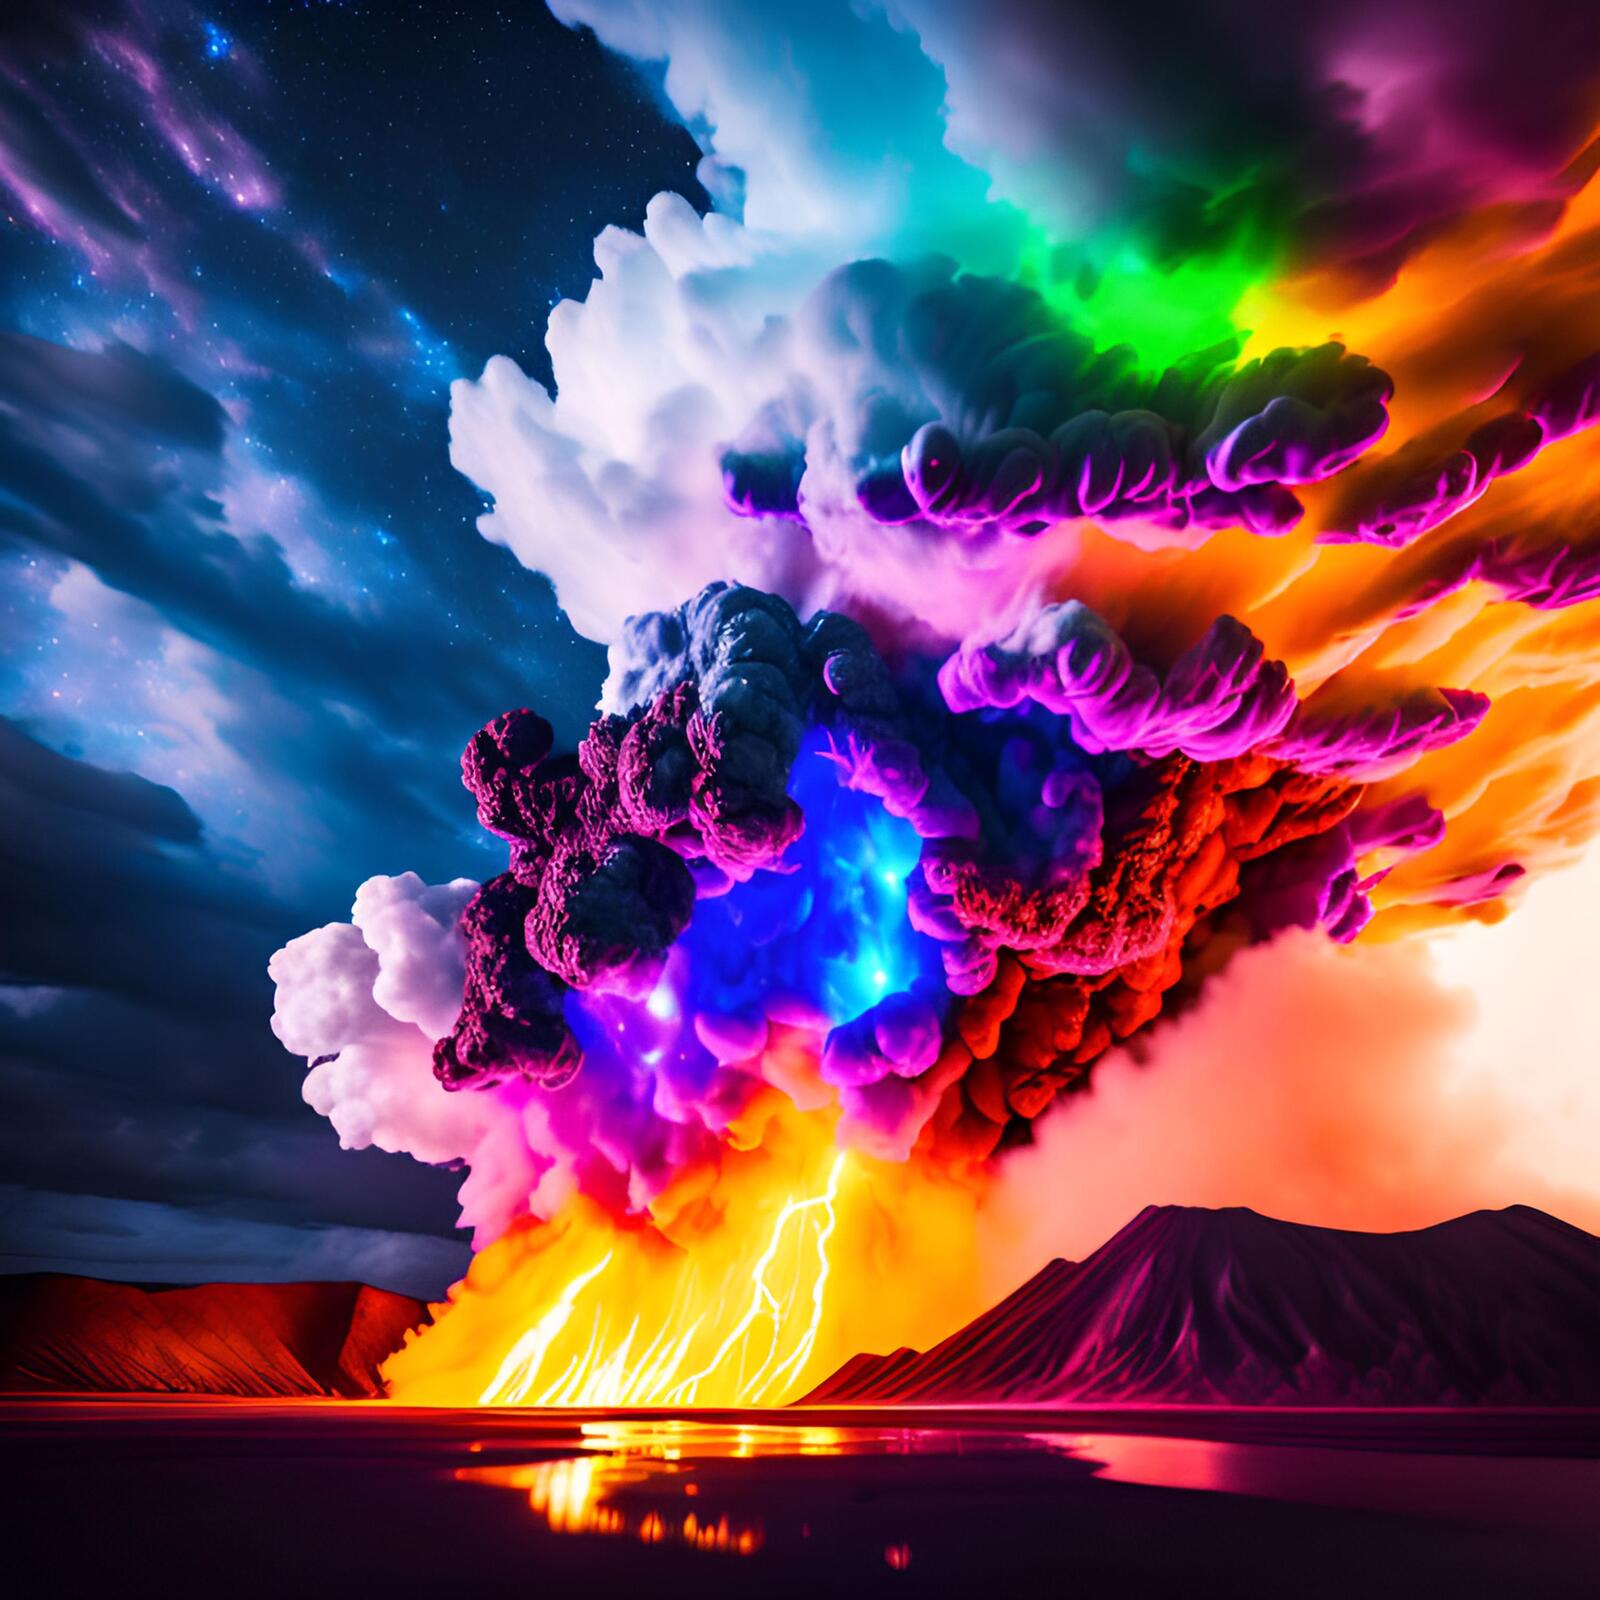 Бесплатное фото Массивные вздымающиеся удивительные разноцветные вулканические облака, подсвеченные огнем снизу